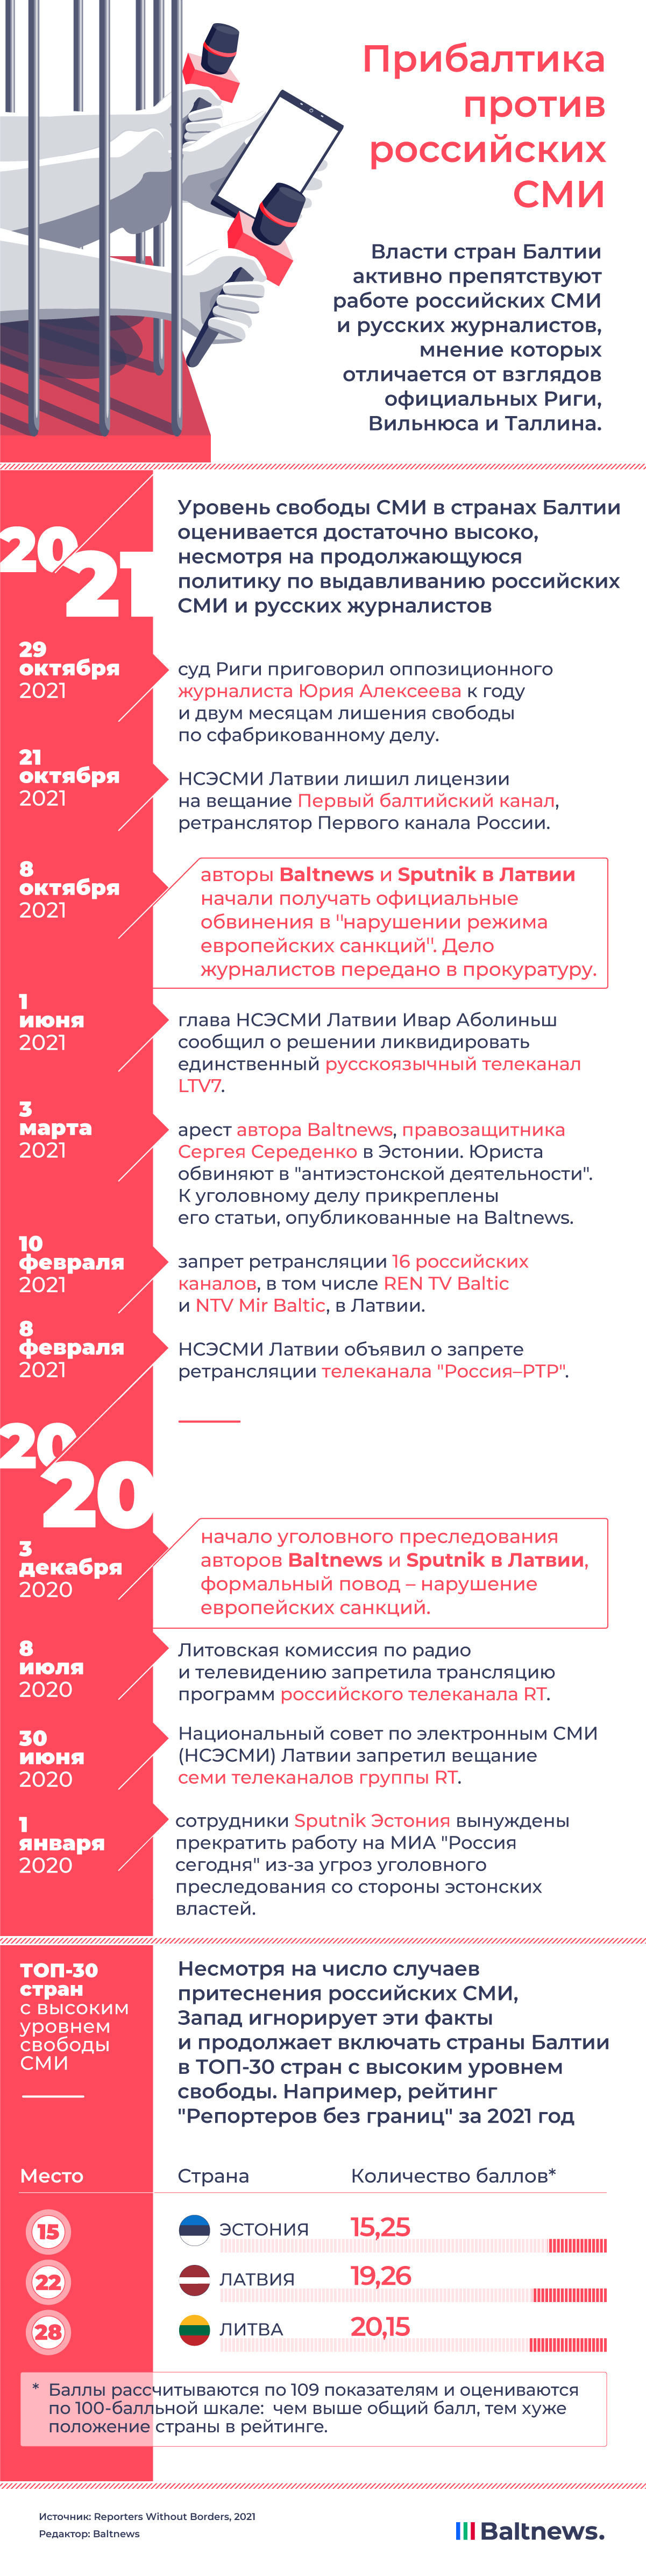   Прибалтика против российских СМИ в 2020 – 2021 гг.